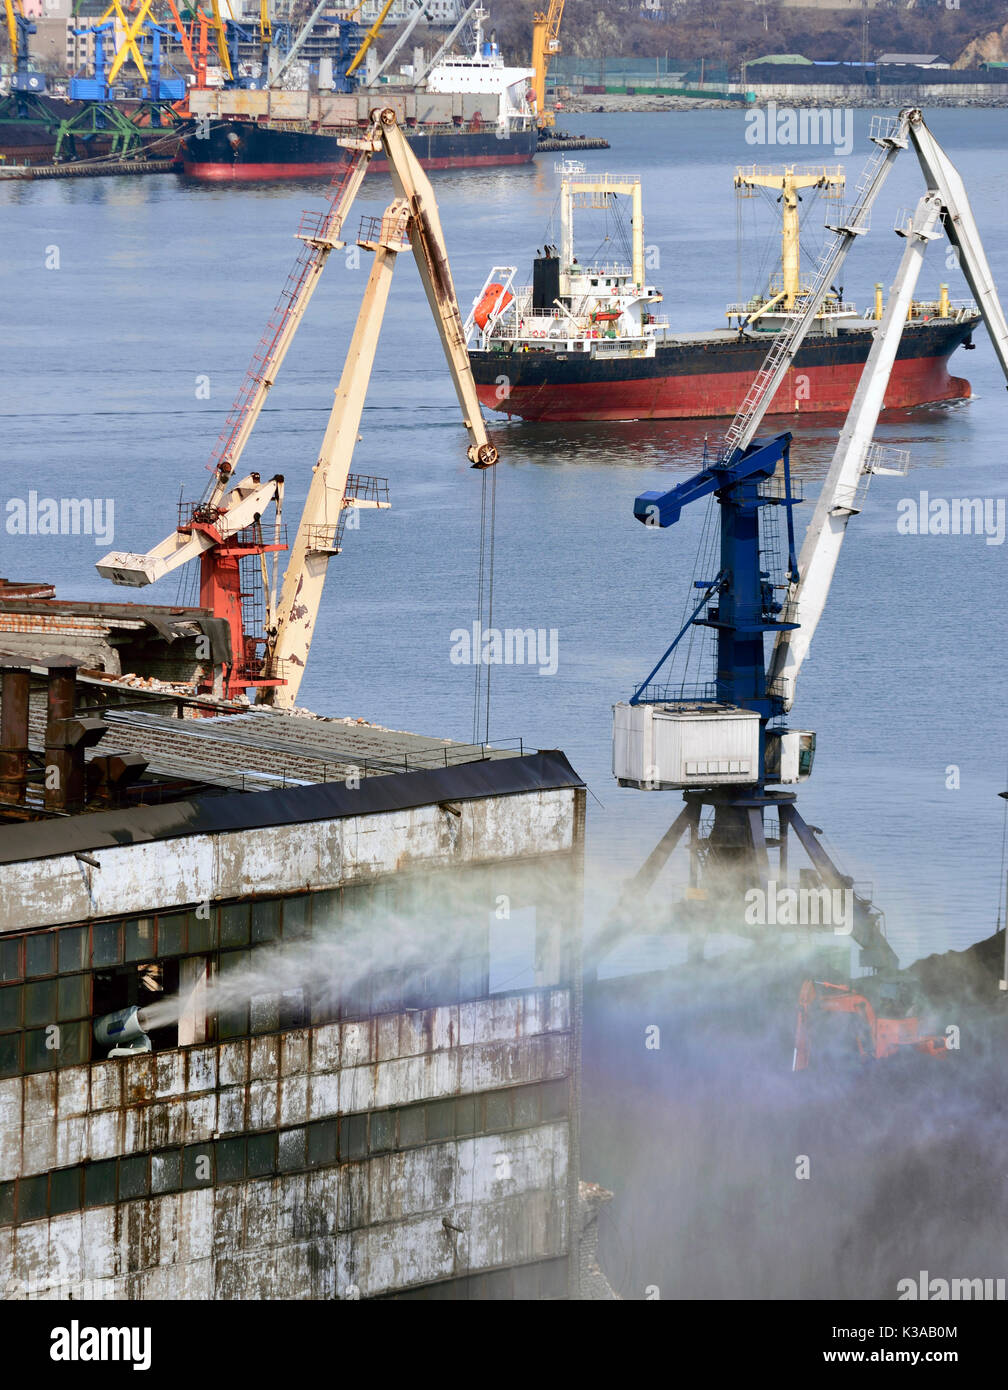 Cannone ad acqua nel porto annacquato il magazzino con il carbone per mancanza di polvere Foto Stock